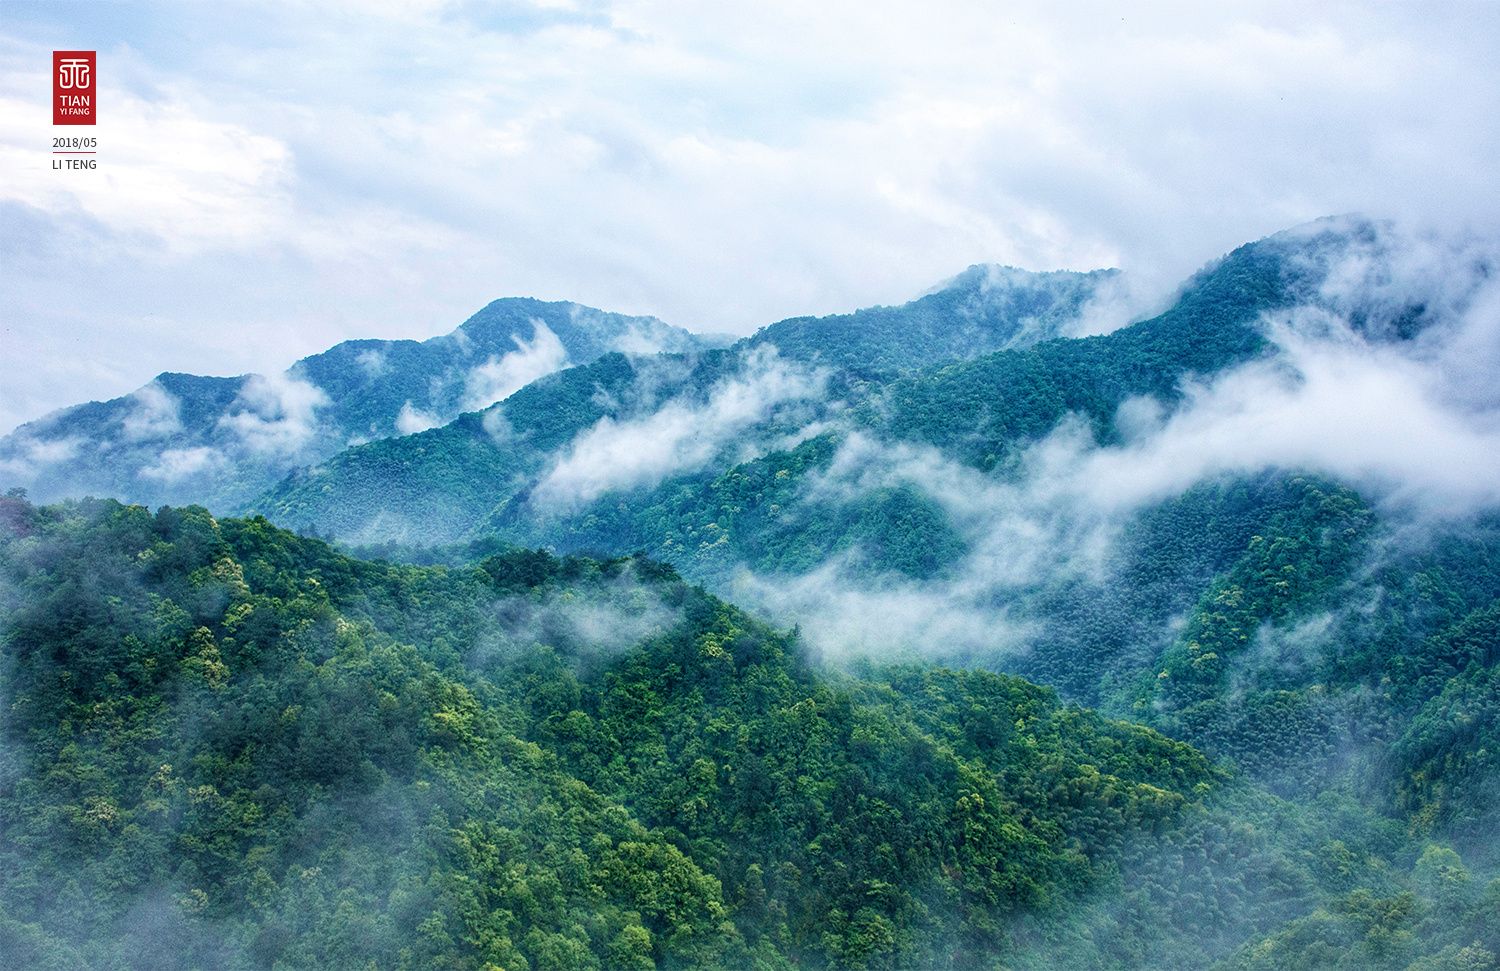 云雾缭绕的瑞士山脉8k风景壁纸_4K风景图片高清壁纸_墨鱼部落格